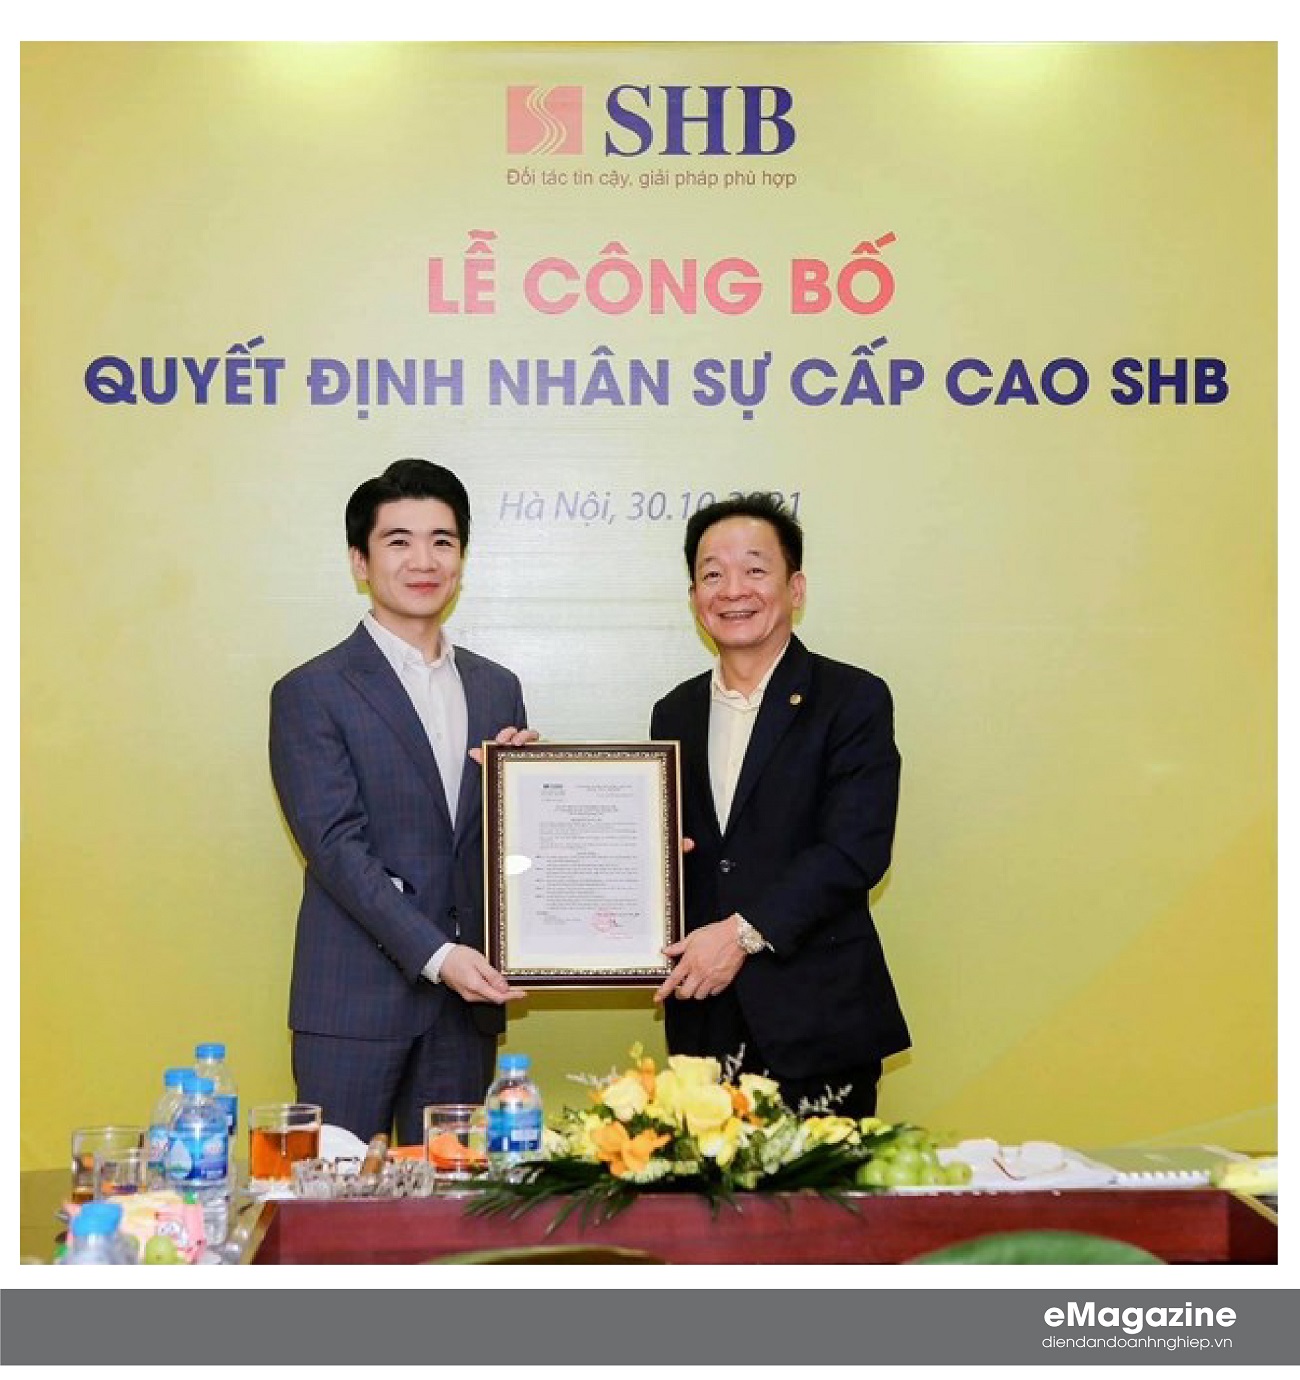 Chủ tịch HĐQT SHB ông Đỗ Quang Hiển trao Quyết định bổ nhiệm ông Đỗ Quang Vinh giữ chức Phó Tổng Giám đốc SHB. Ảnh: SHB